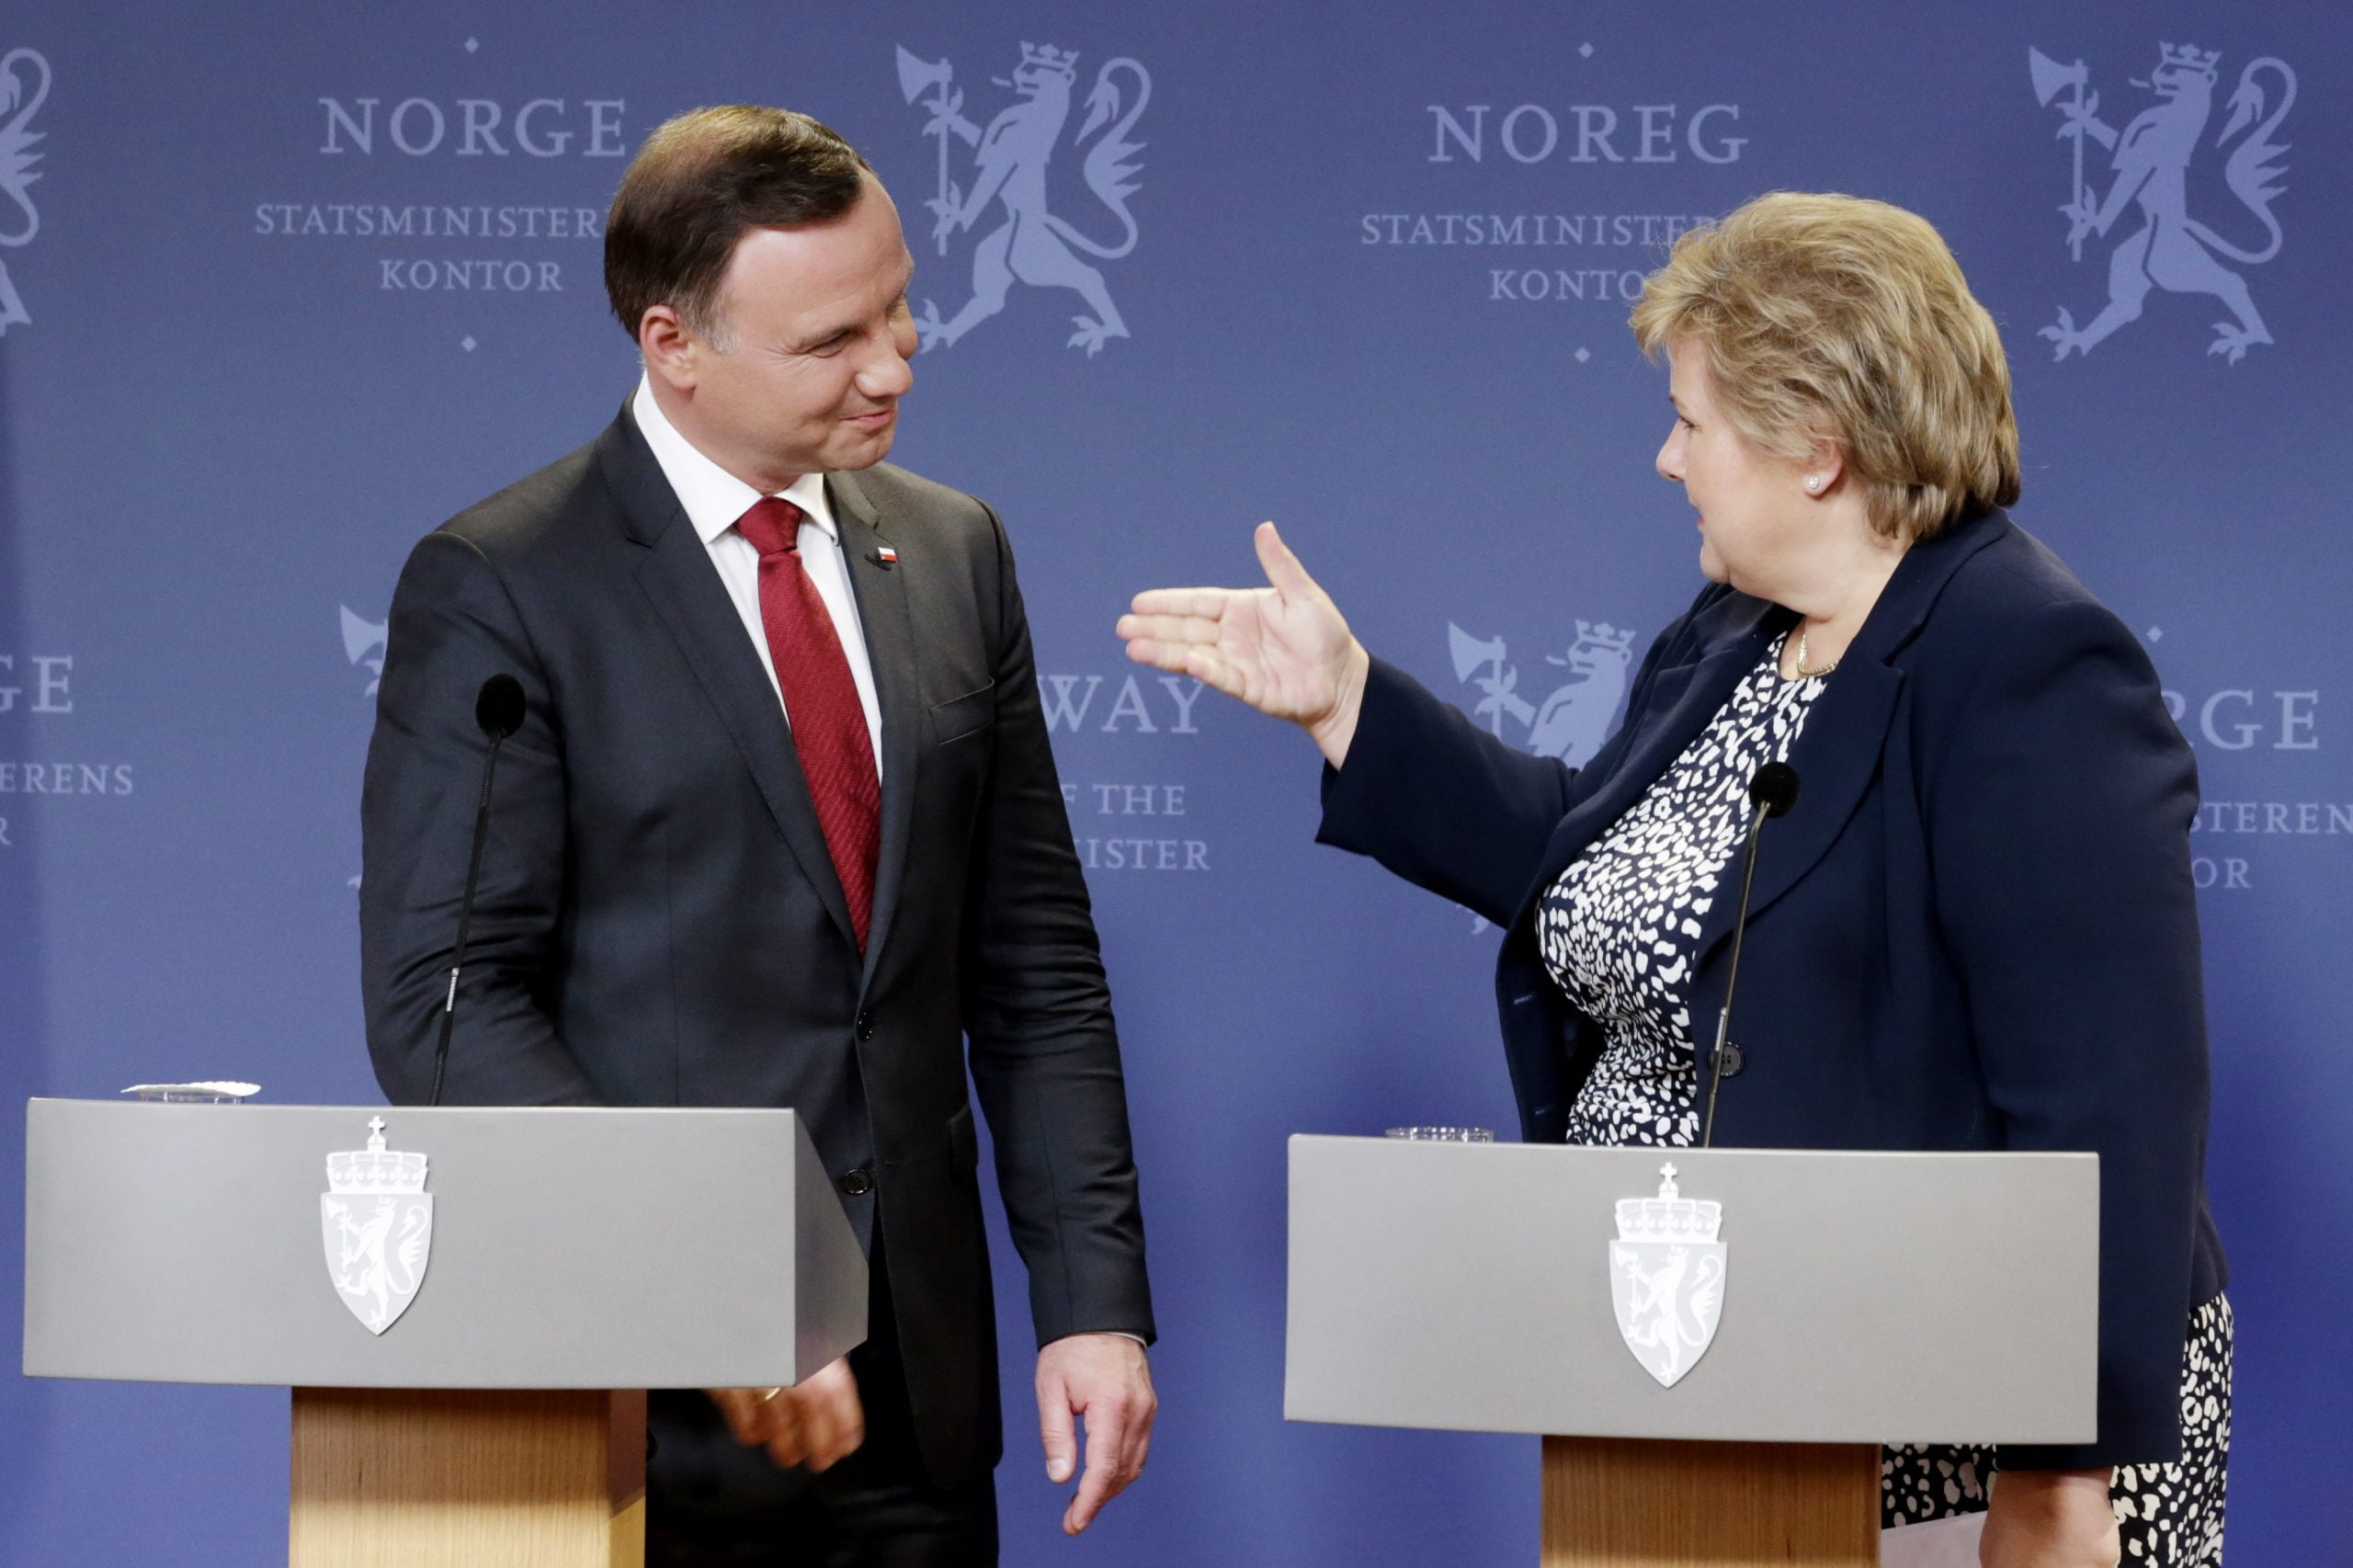 Solberg préoccupé par les avertissements sur l'état de la démocratie en Pologne - 3